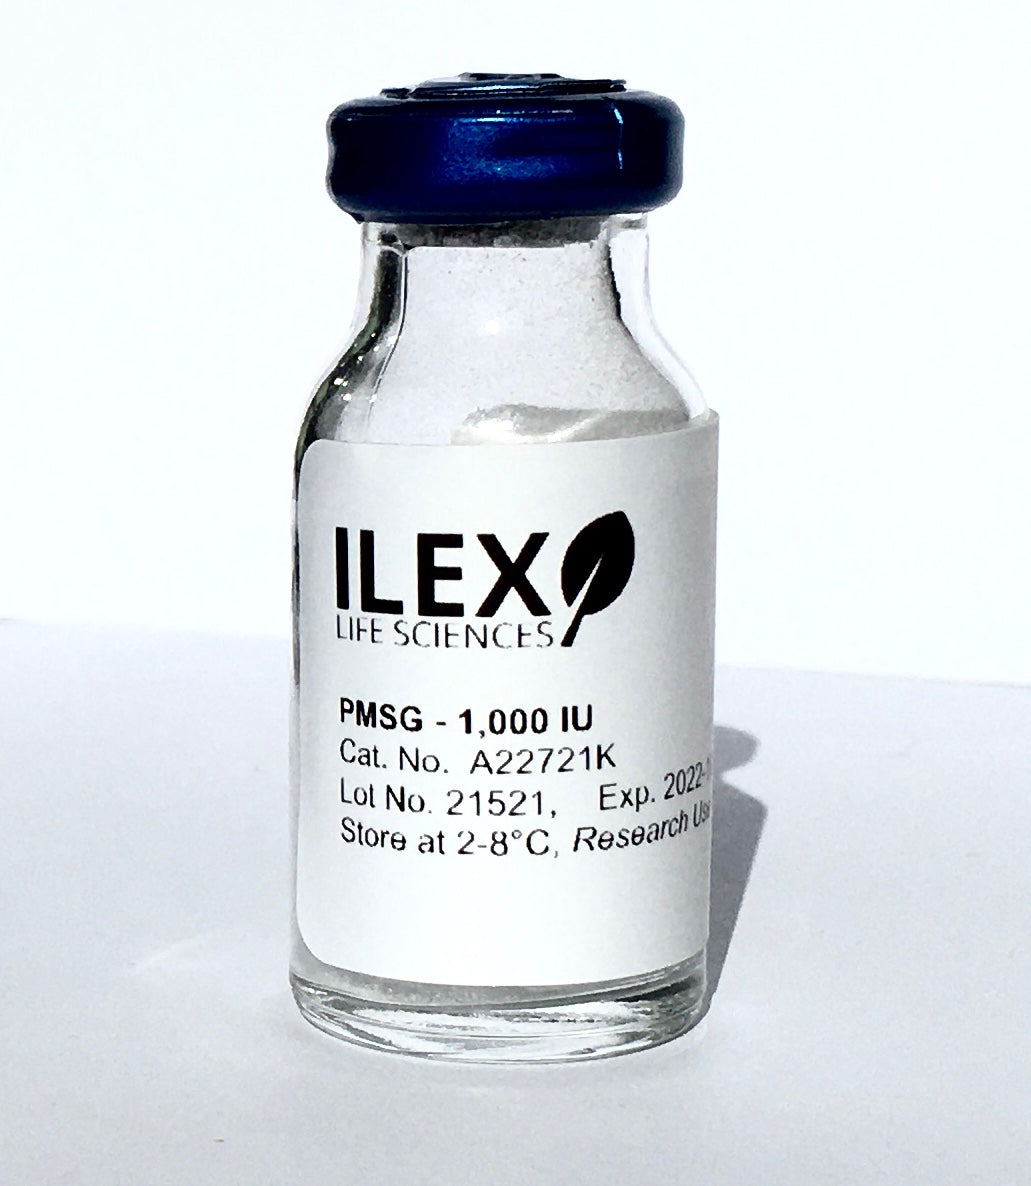 Ilex Life Sciences Pregnant Mare Serum Gonadotropin (PMSG/eCG), 1000 IU